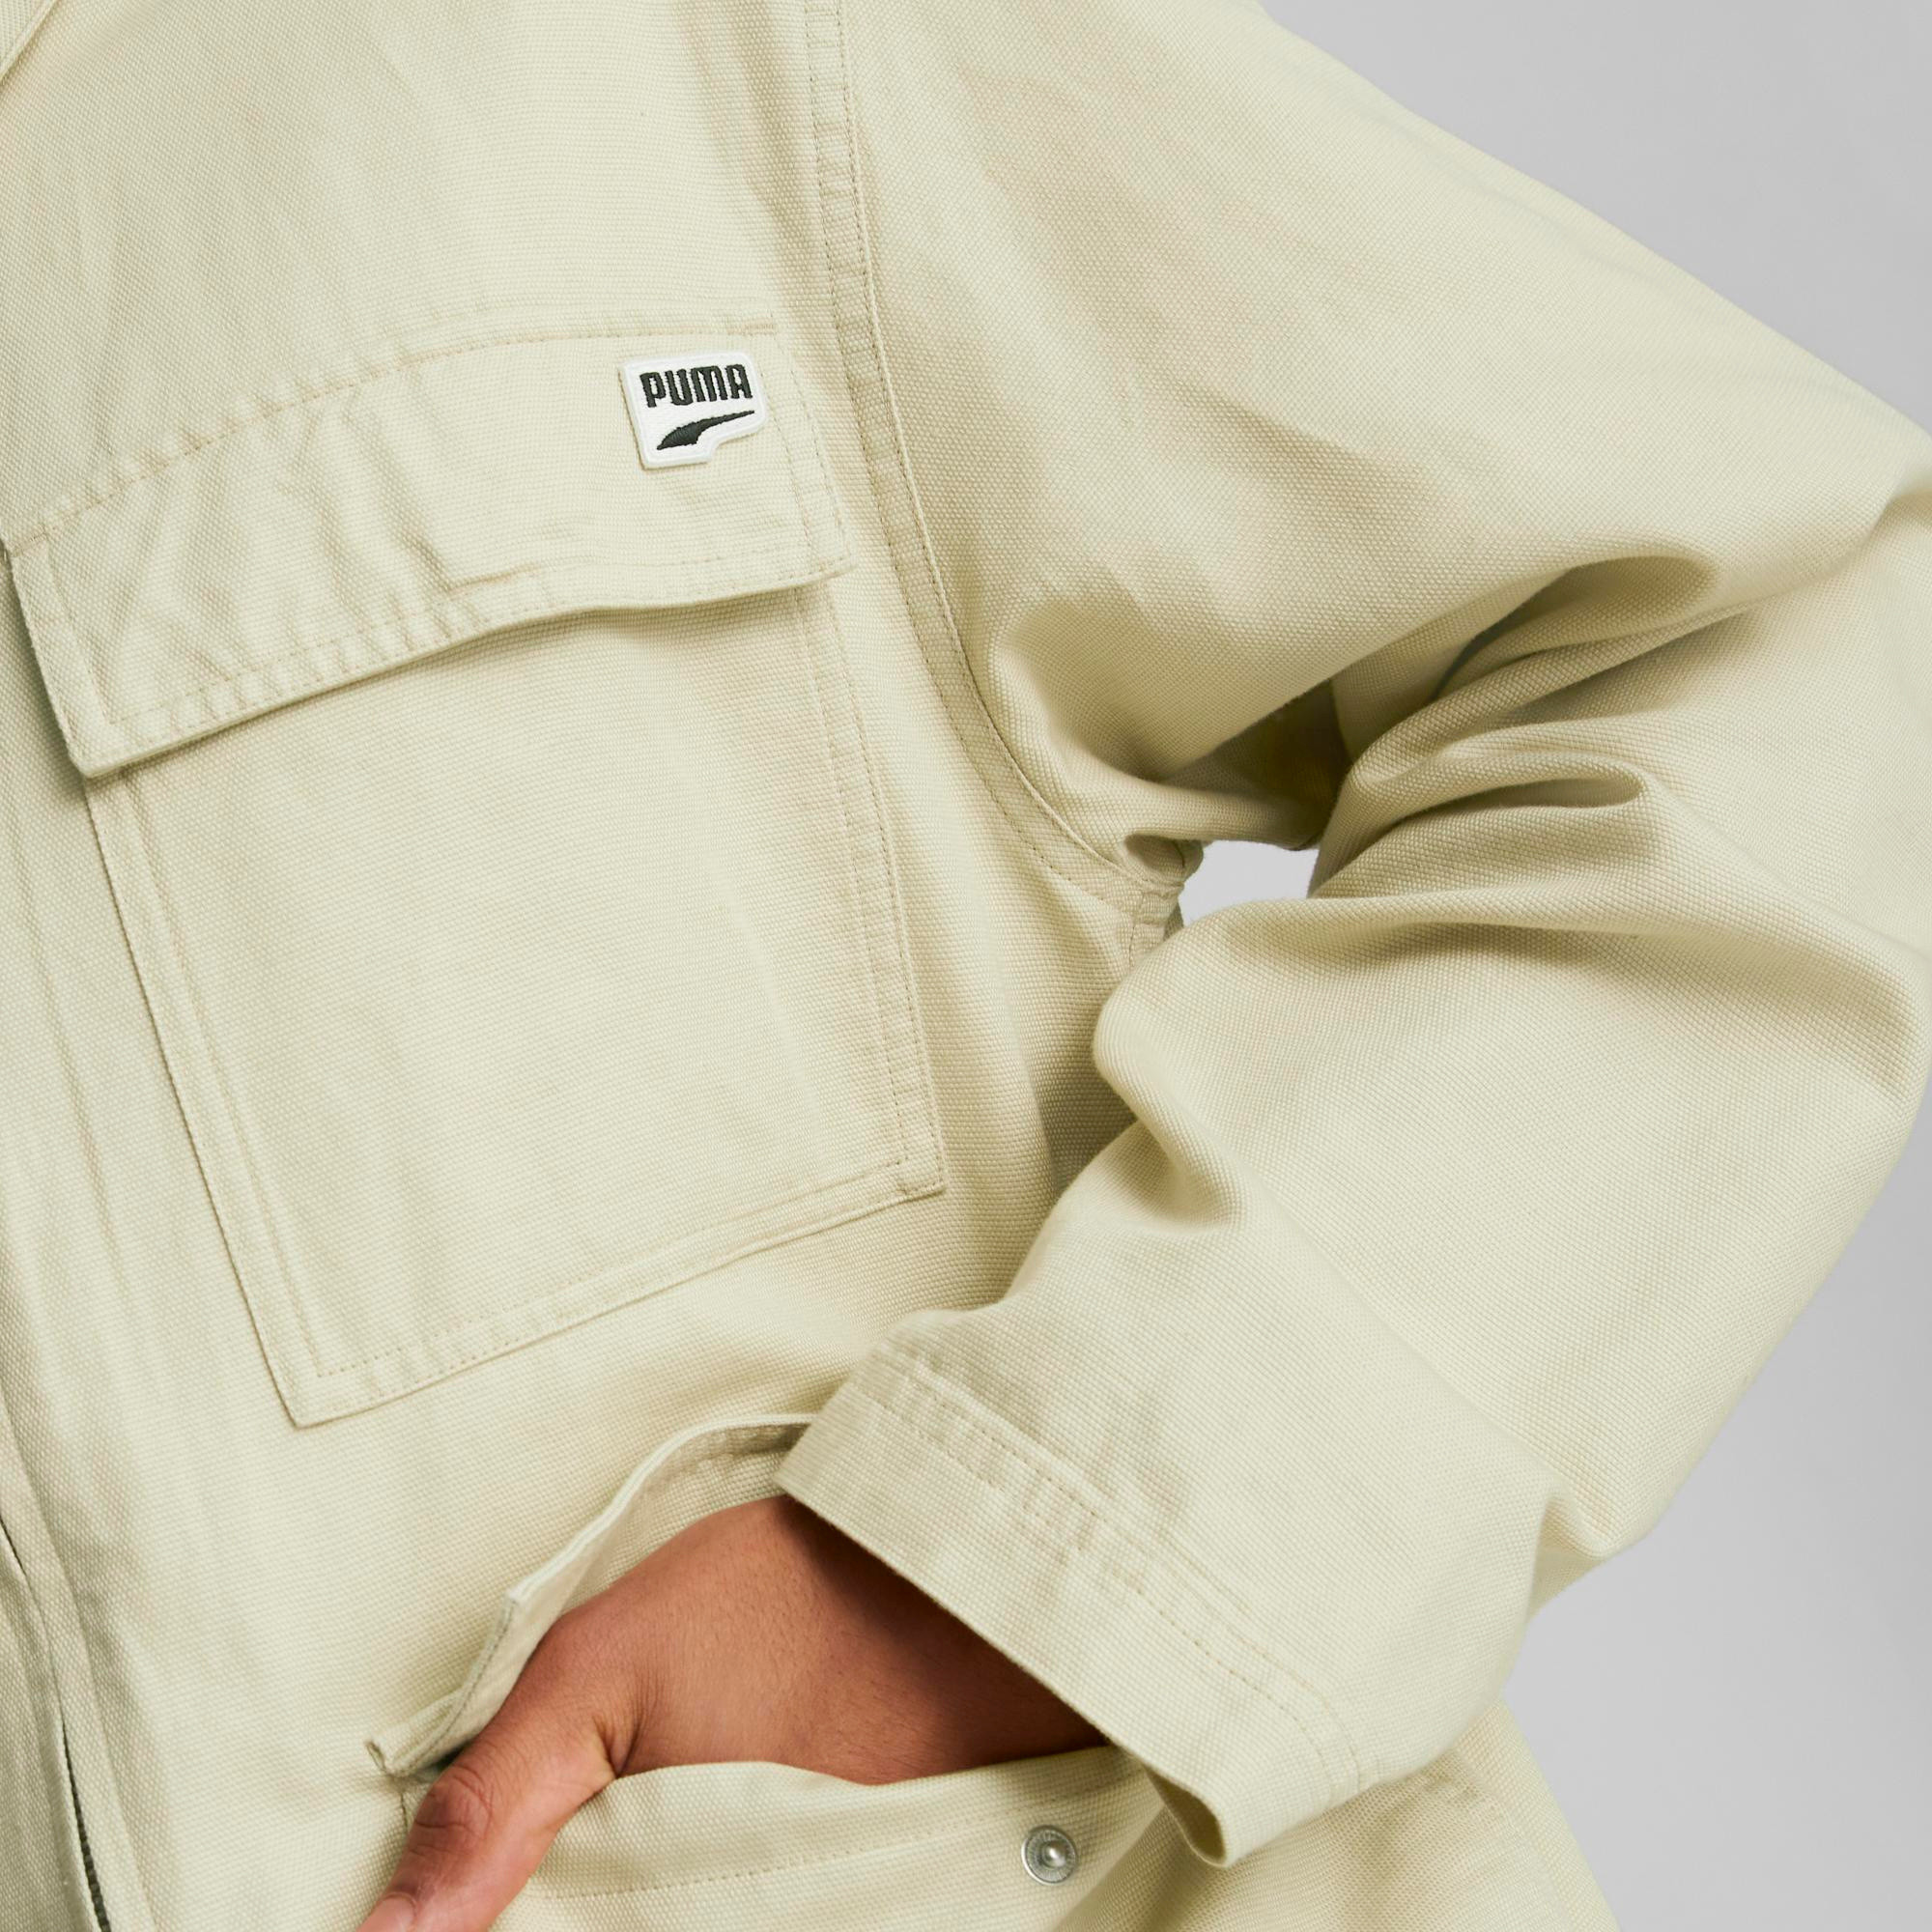 Puma - Jacket with pockets, Light Beige, large image number 2